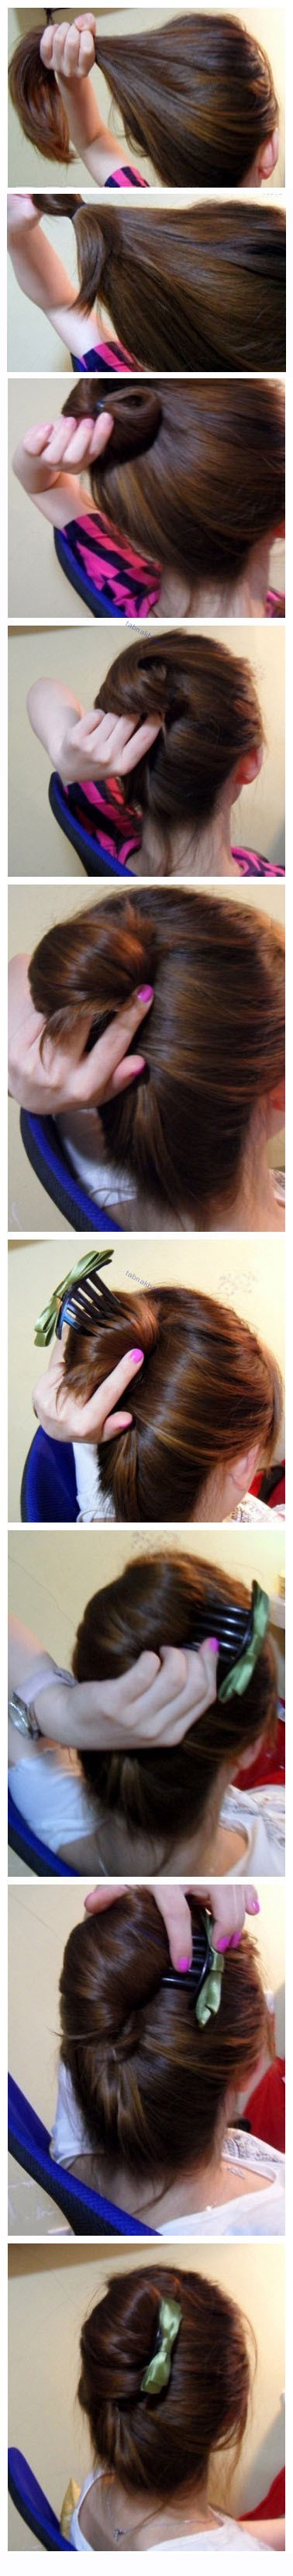 آموزش تصویری بستن مو به روش های ساده